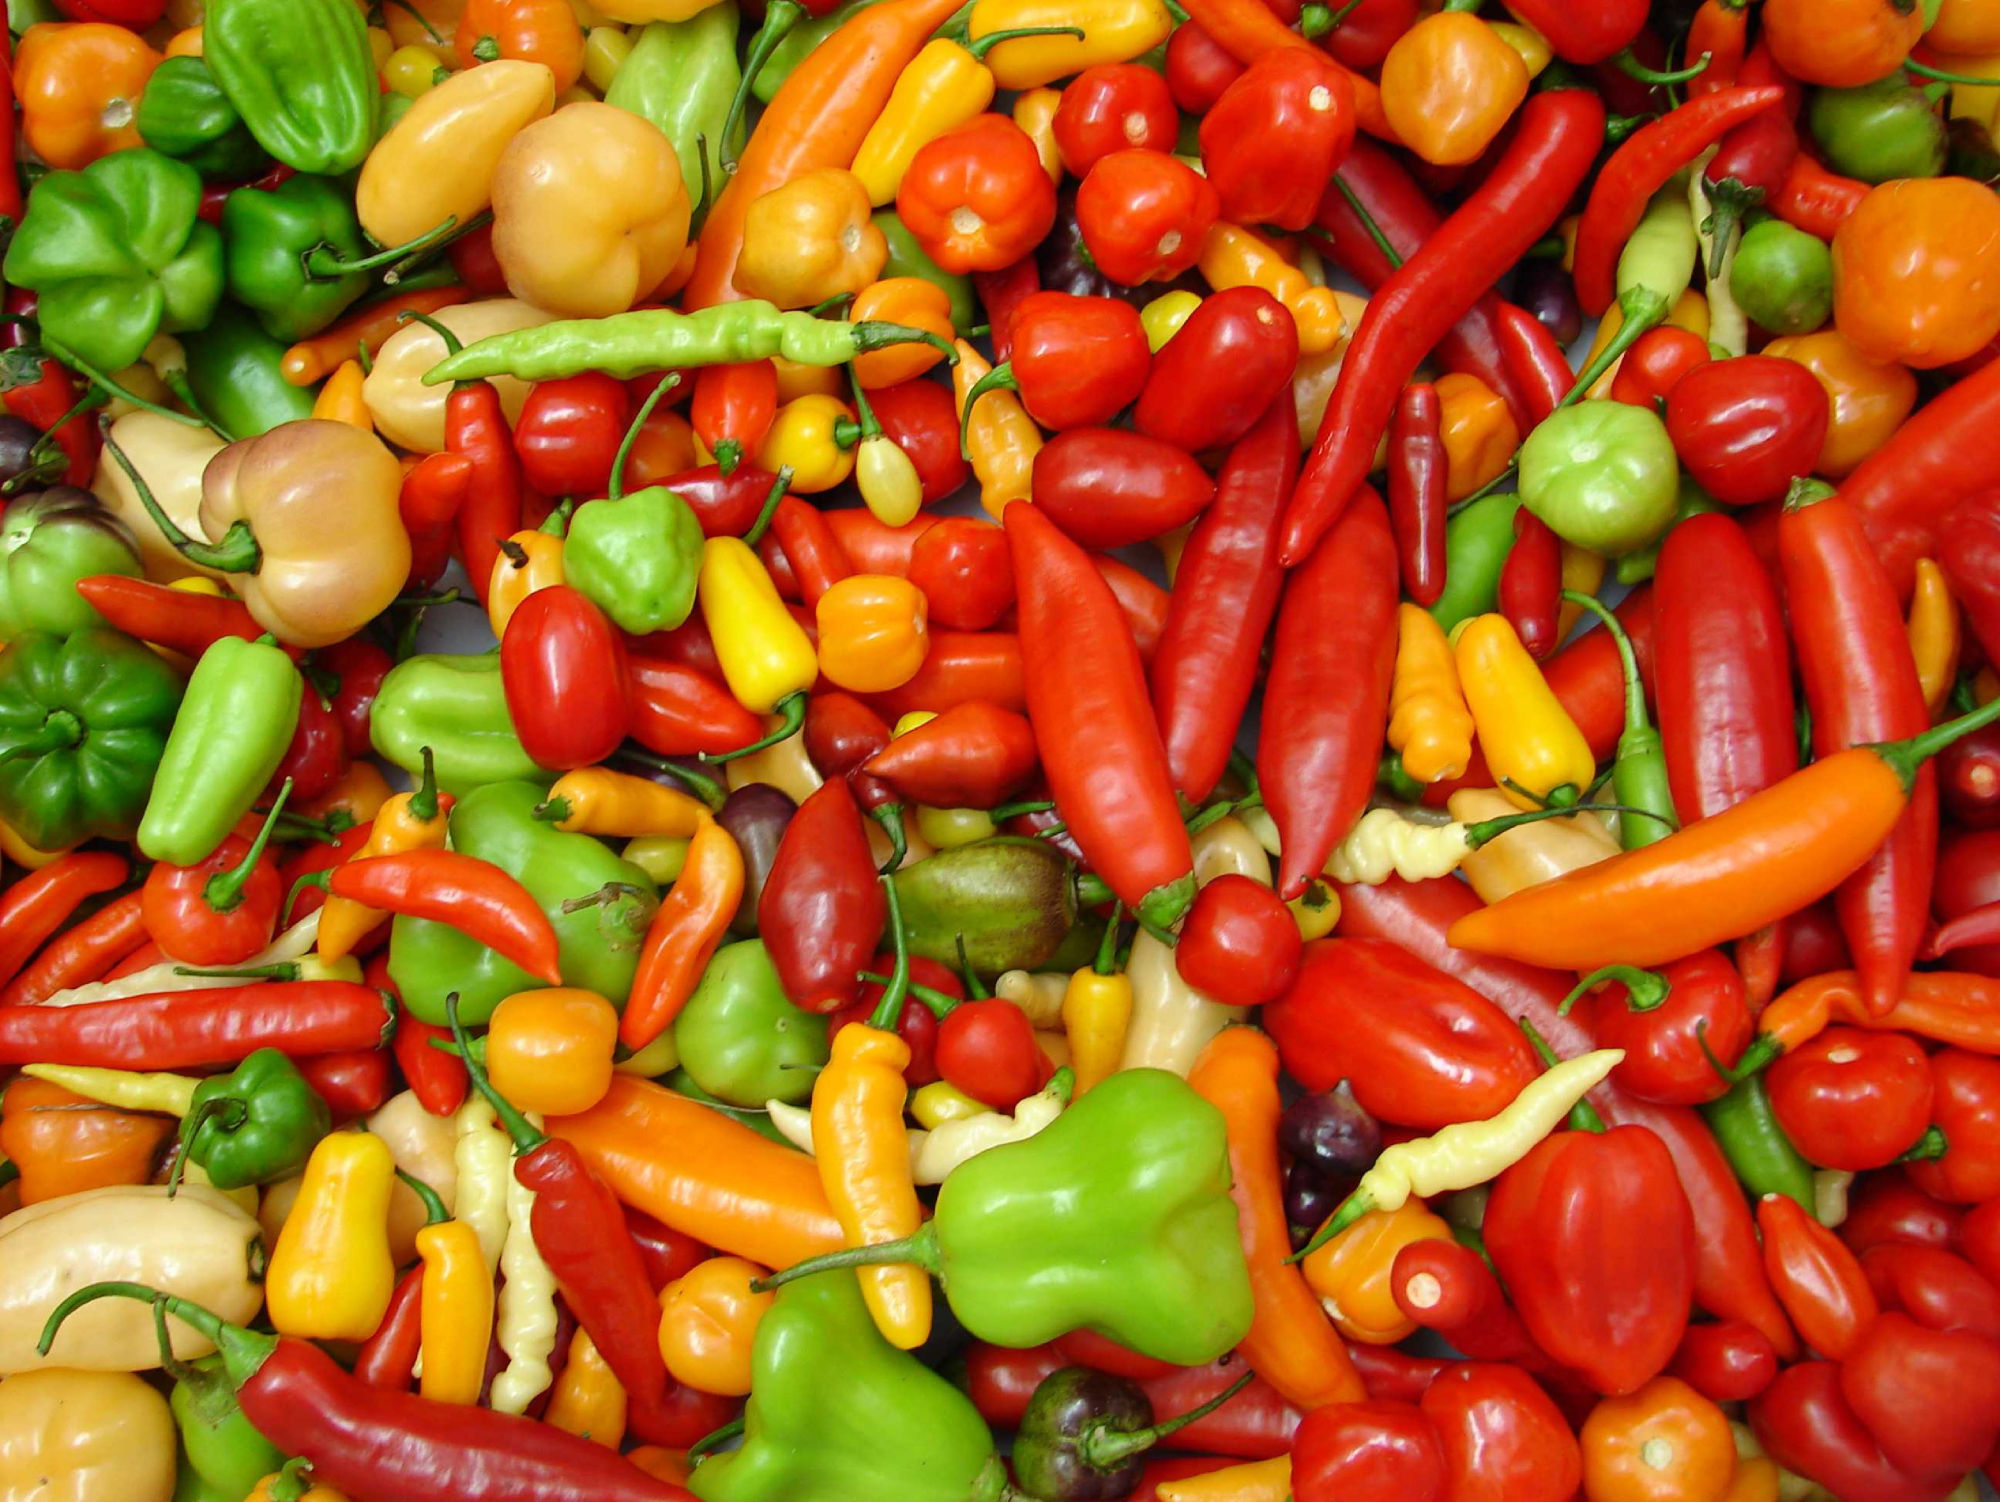 Foto de pimentas do gênero Capsicum nas cores vermelhas, laranjas, amarelas e verdes em diferentes tamanhos e formatos